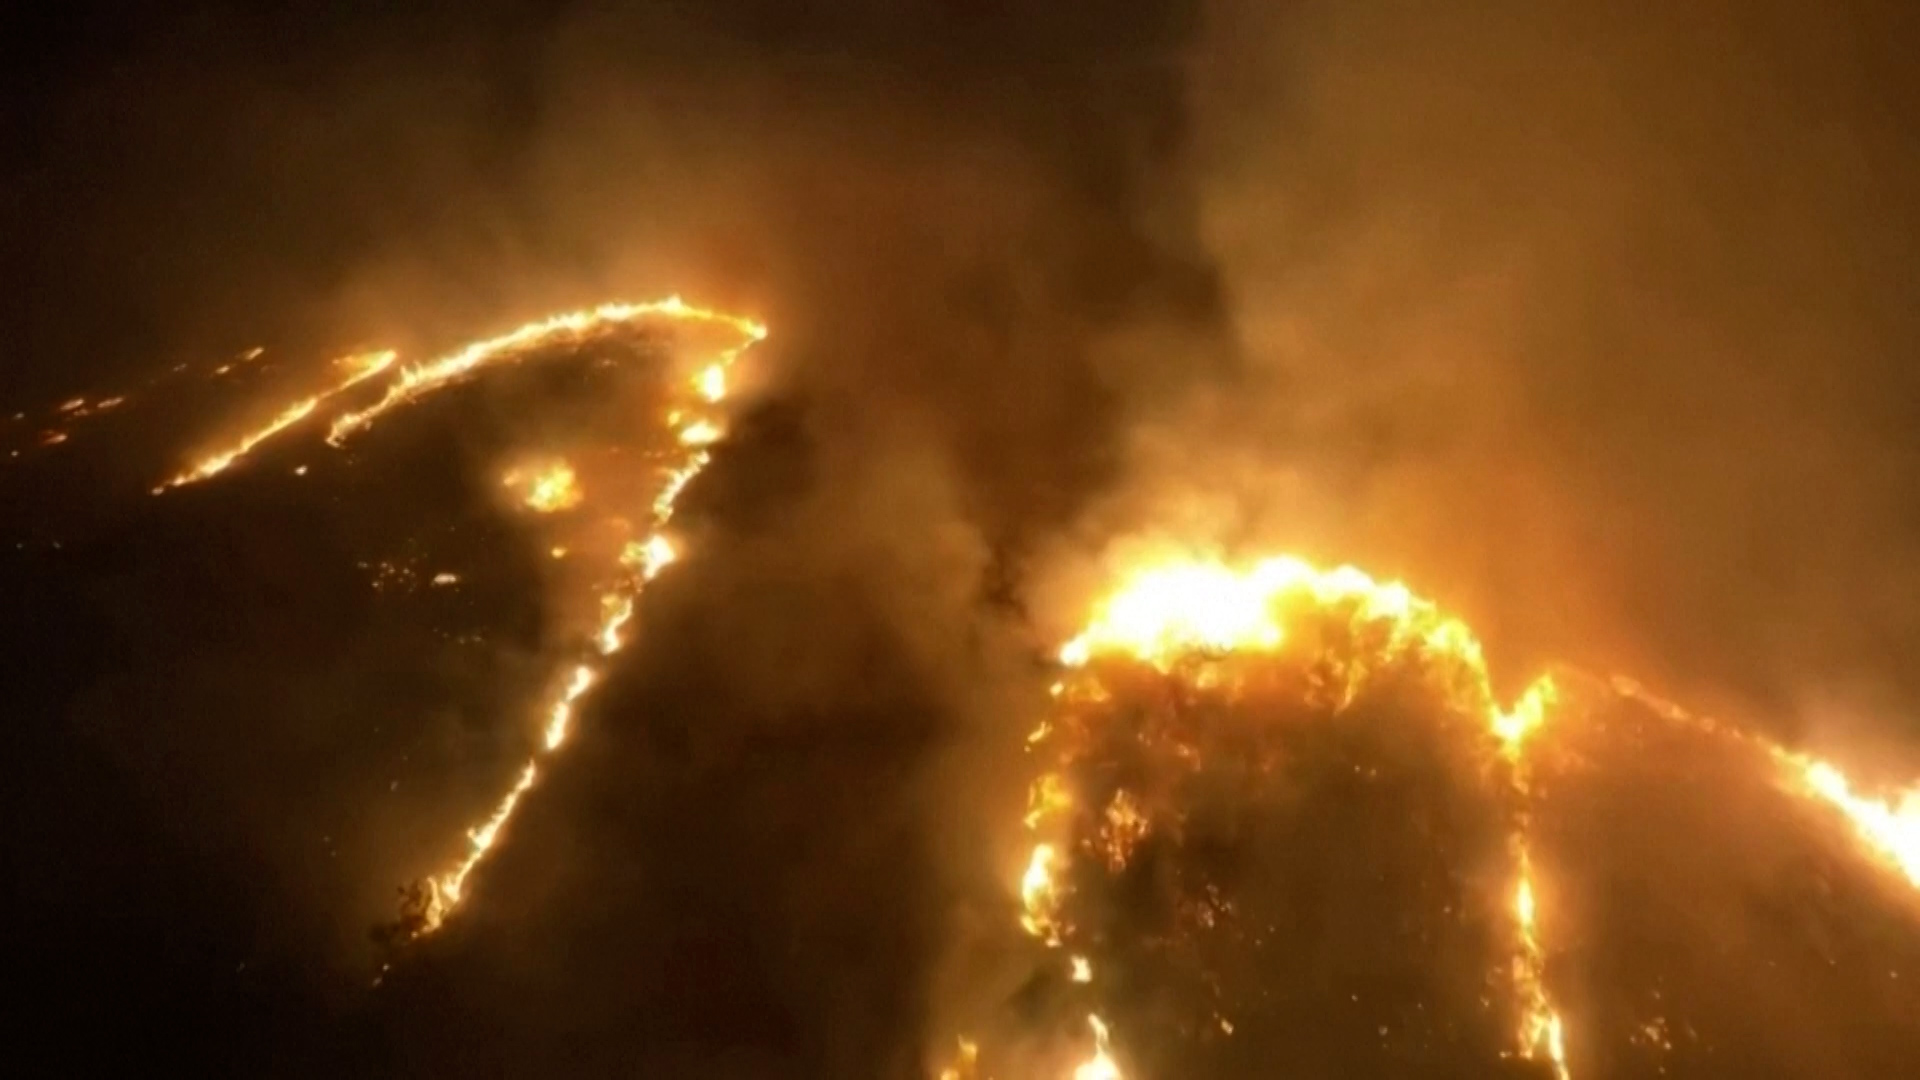 Δραματικό βίντεο από drone δείχνει το εύρος των καταστροφικών πυρκαγιών στη Χαβάη